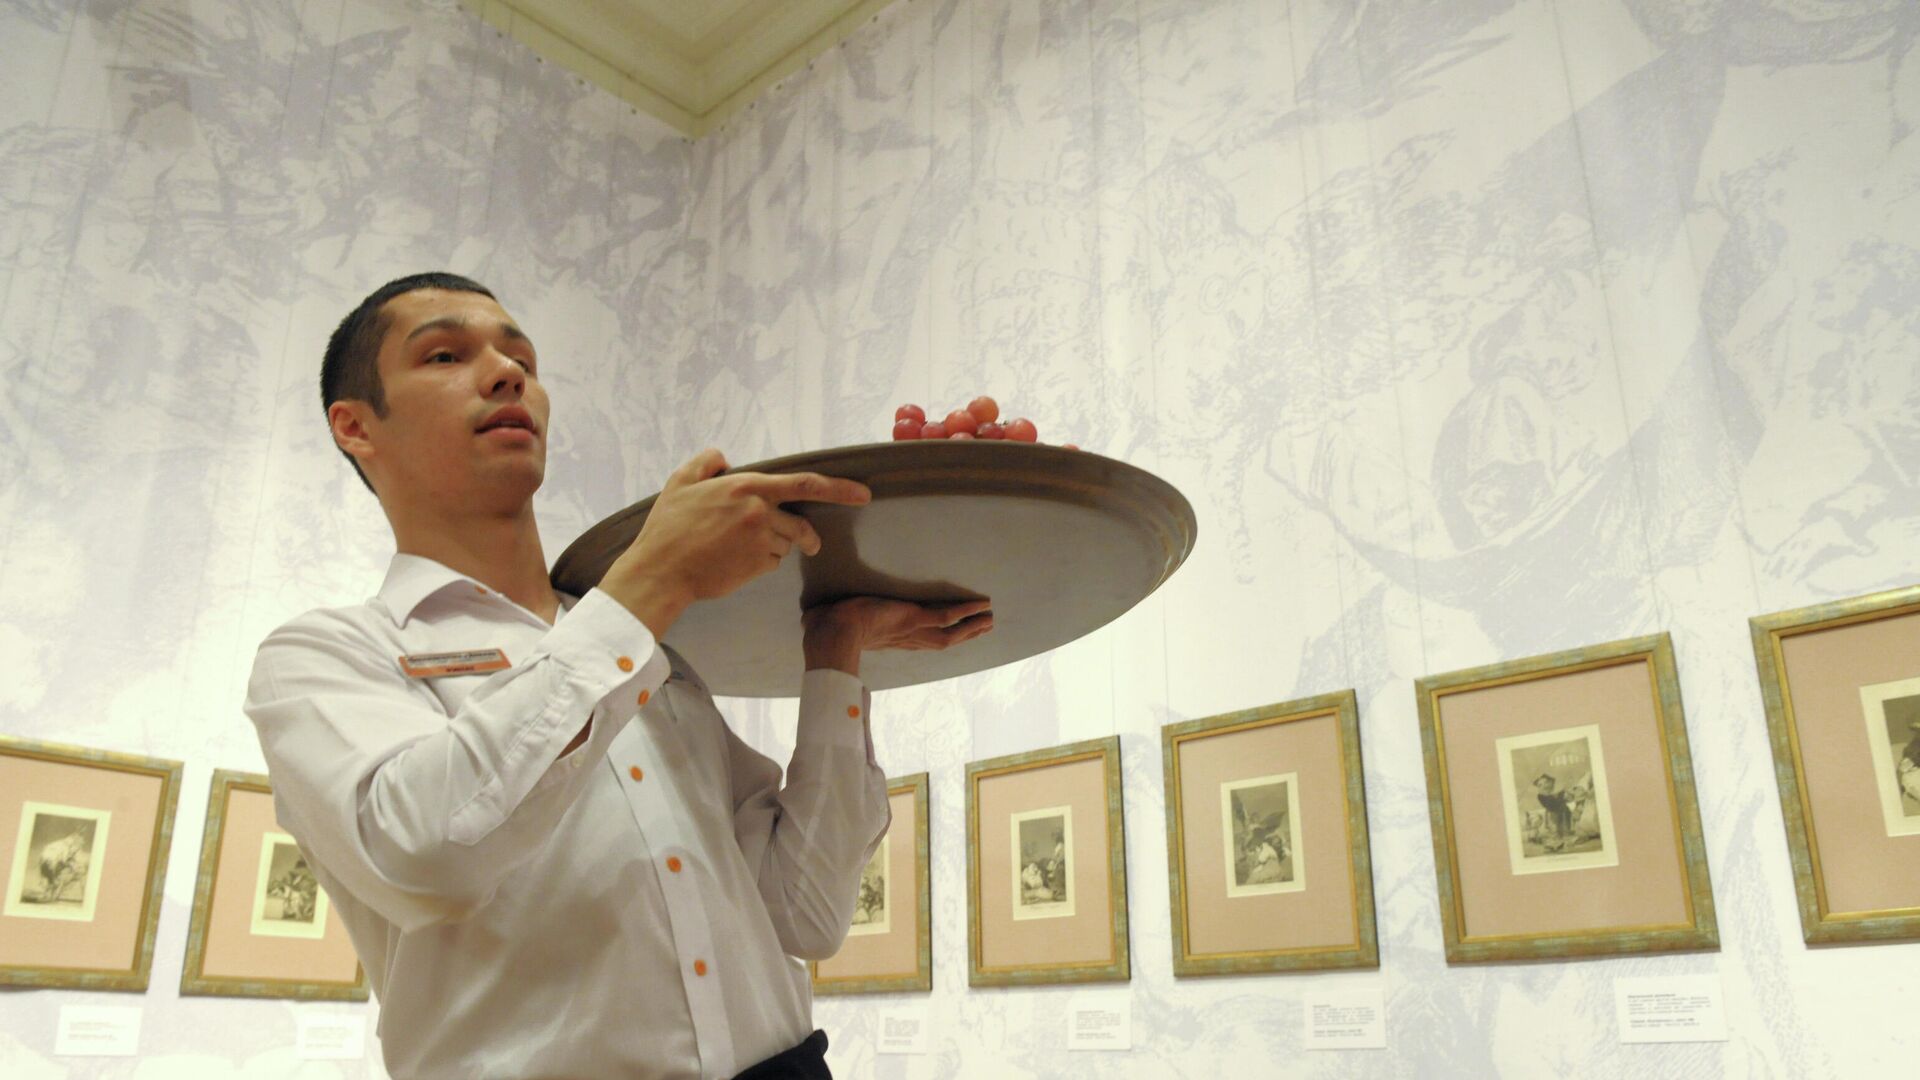 Официант с подносом в ресторане, архивное фото - Sputnik Таджикистан, 1920, 19.04.2021